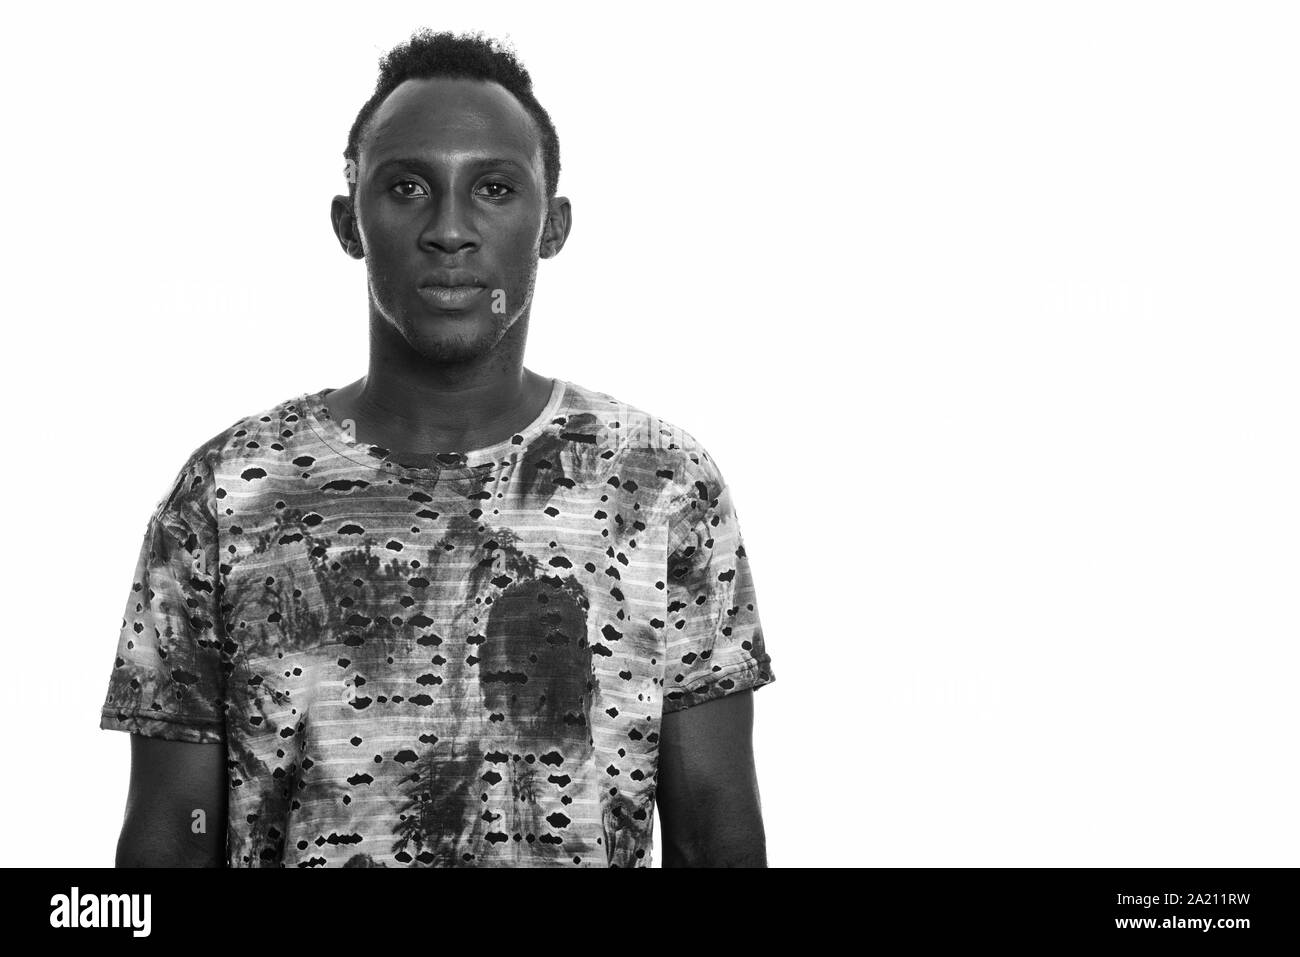 Portrait de jeune homme africain en noir et blanc Banque D'Images